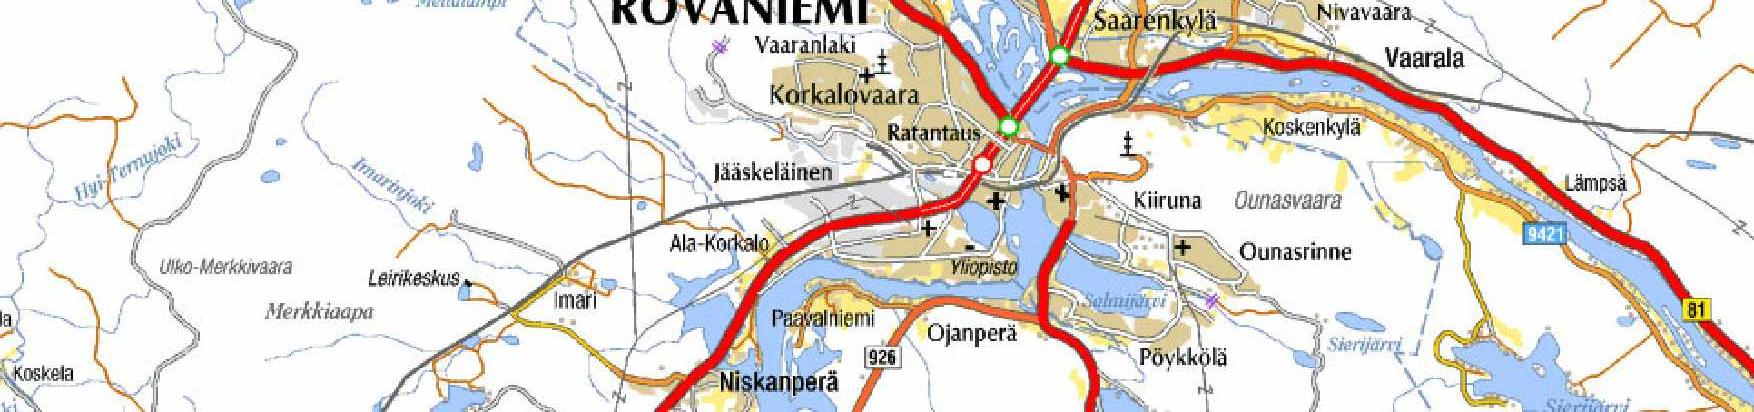 2 1. Suunnitelman nimi ja suunnittelualue Ylikylä - Nivankylä osayleiskaava Rovaniemen kaupungin Nivankylä sijaitsee n.